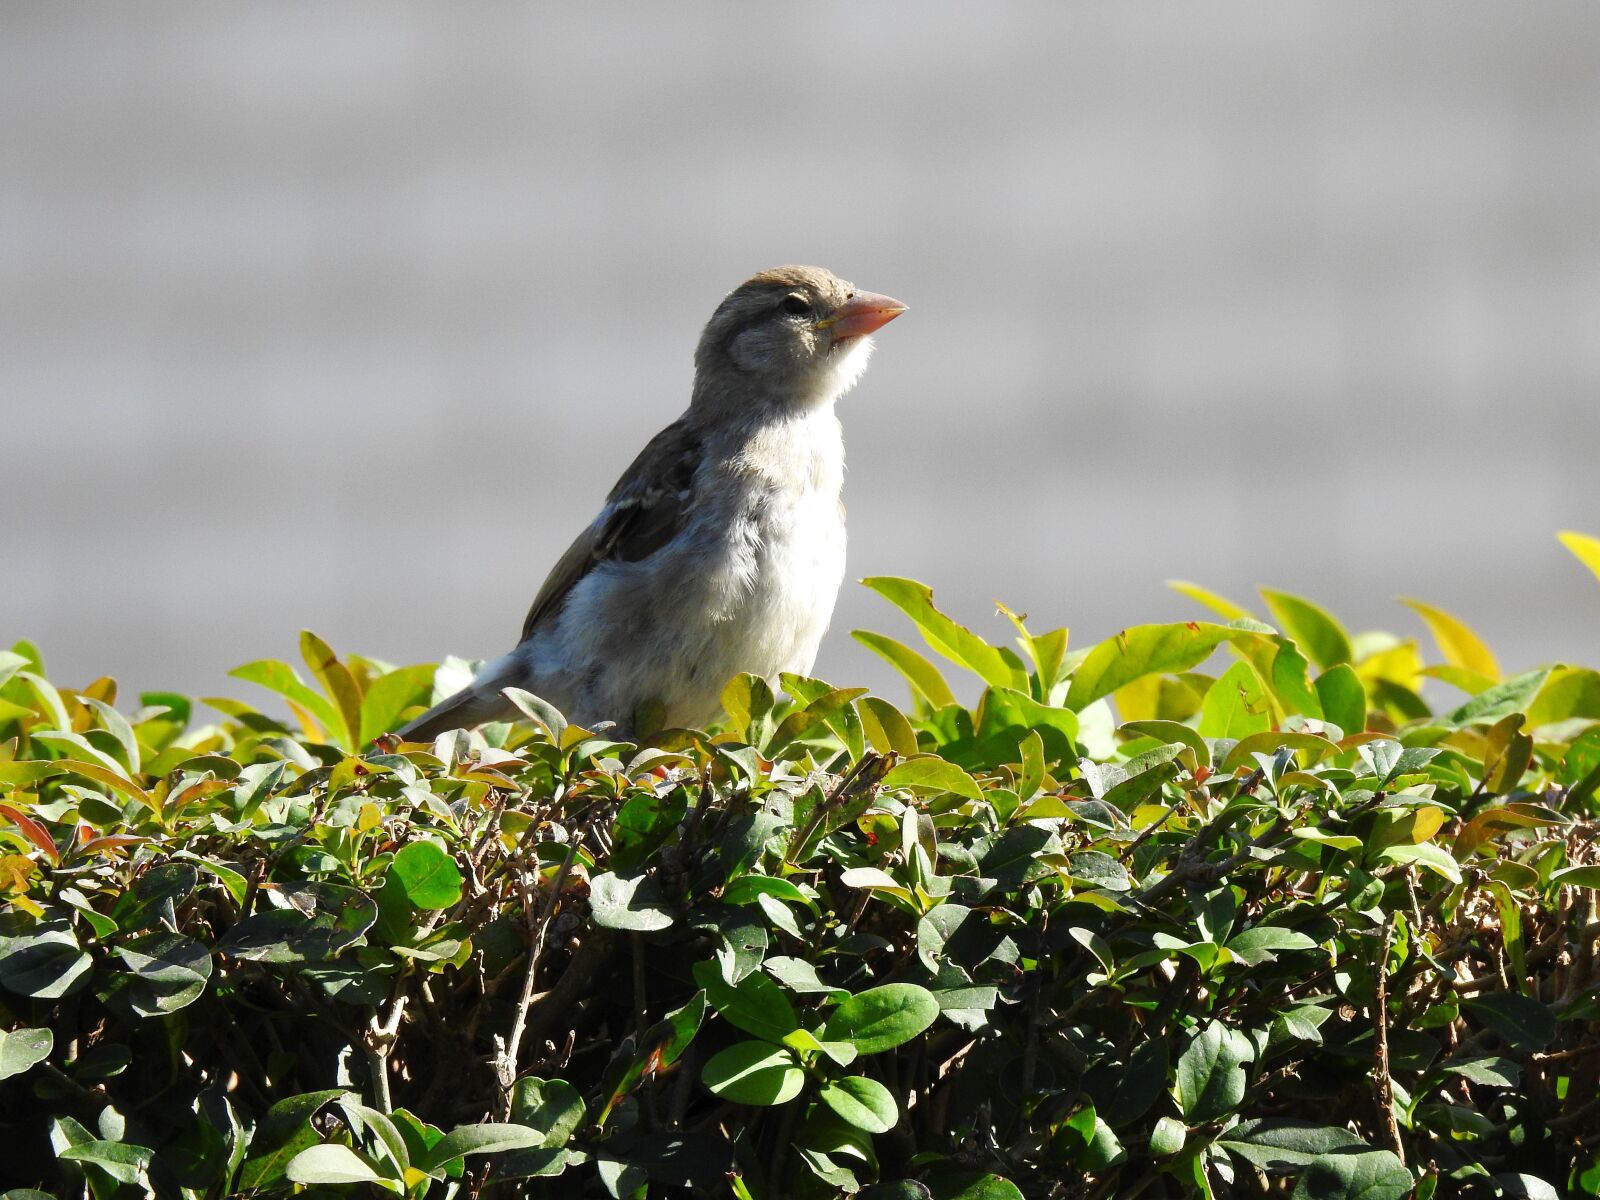 Nikon Coolpix P900 sample photo. Bird, the sparrow, nature photography